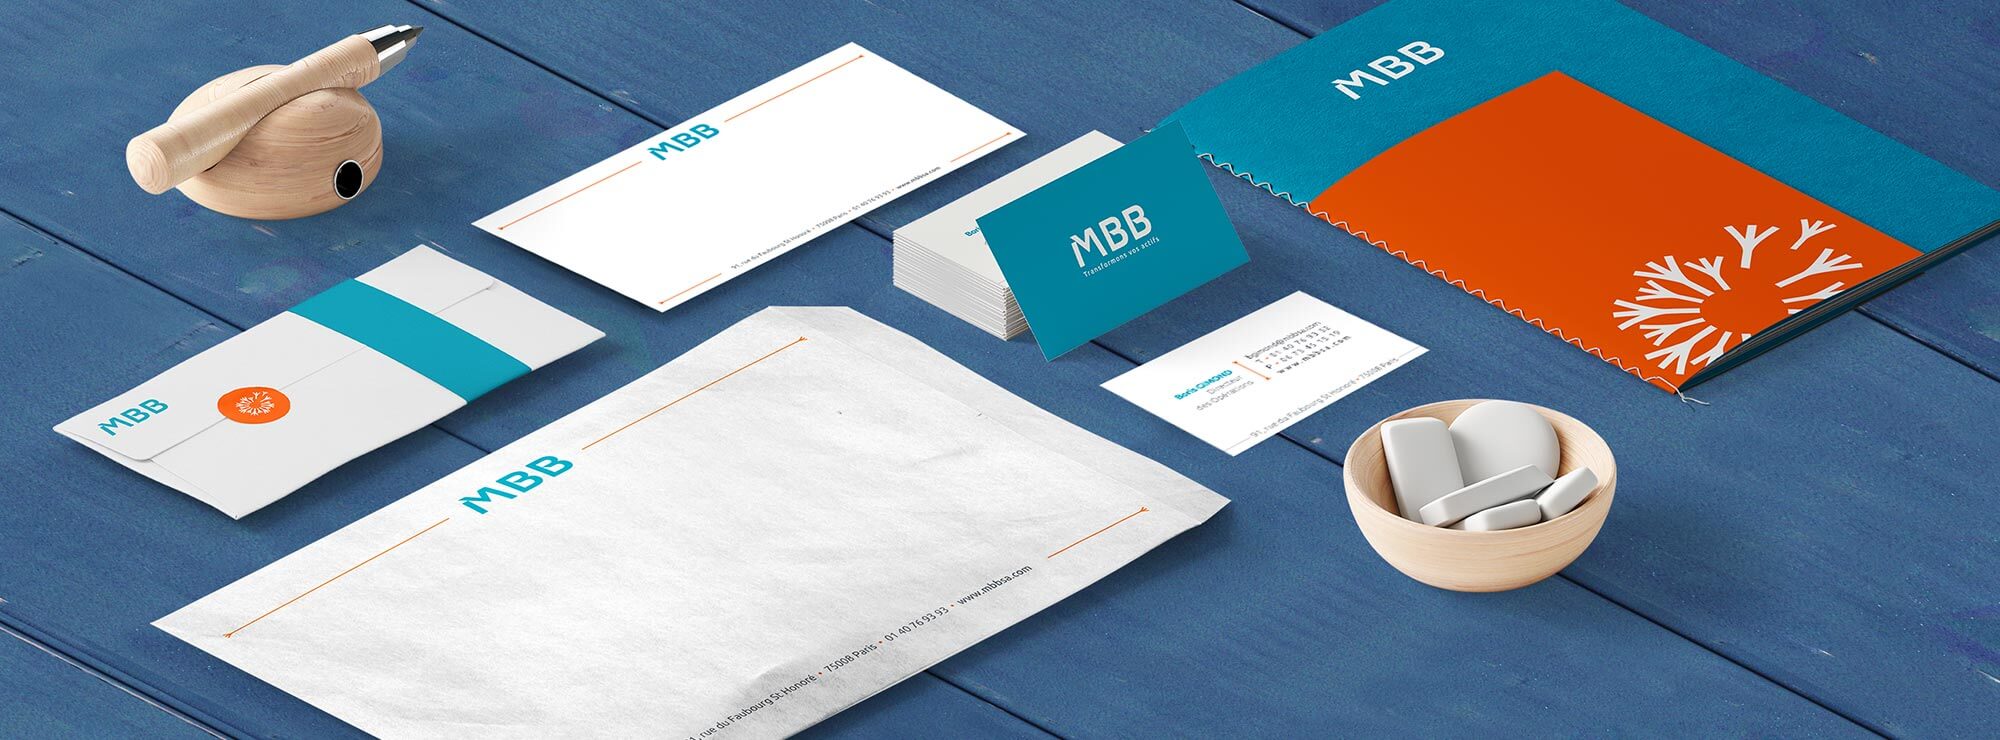 MBB - une logo et un site qui ne se troquent pas